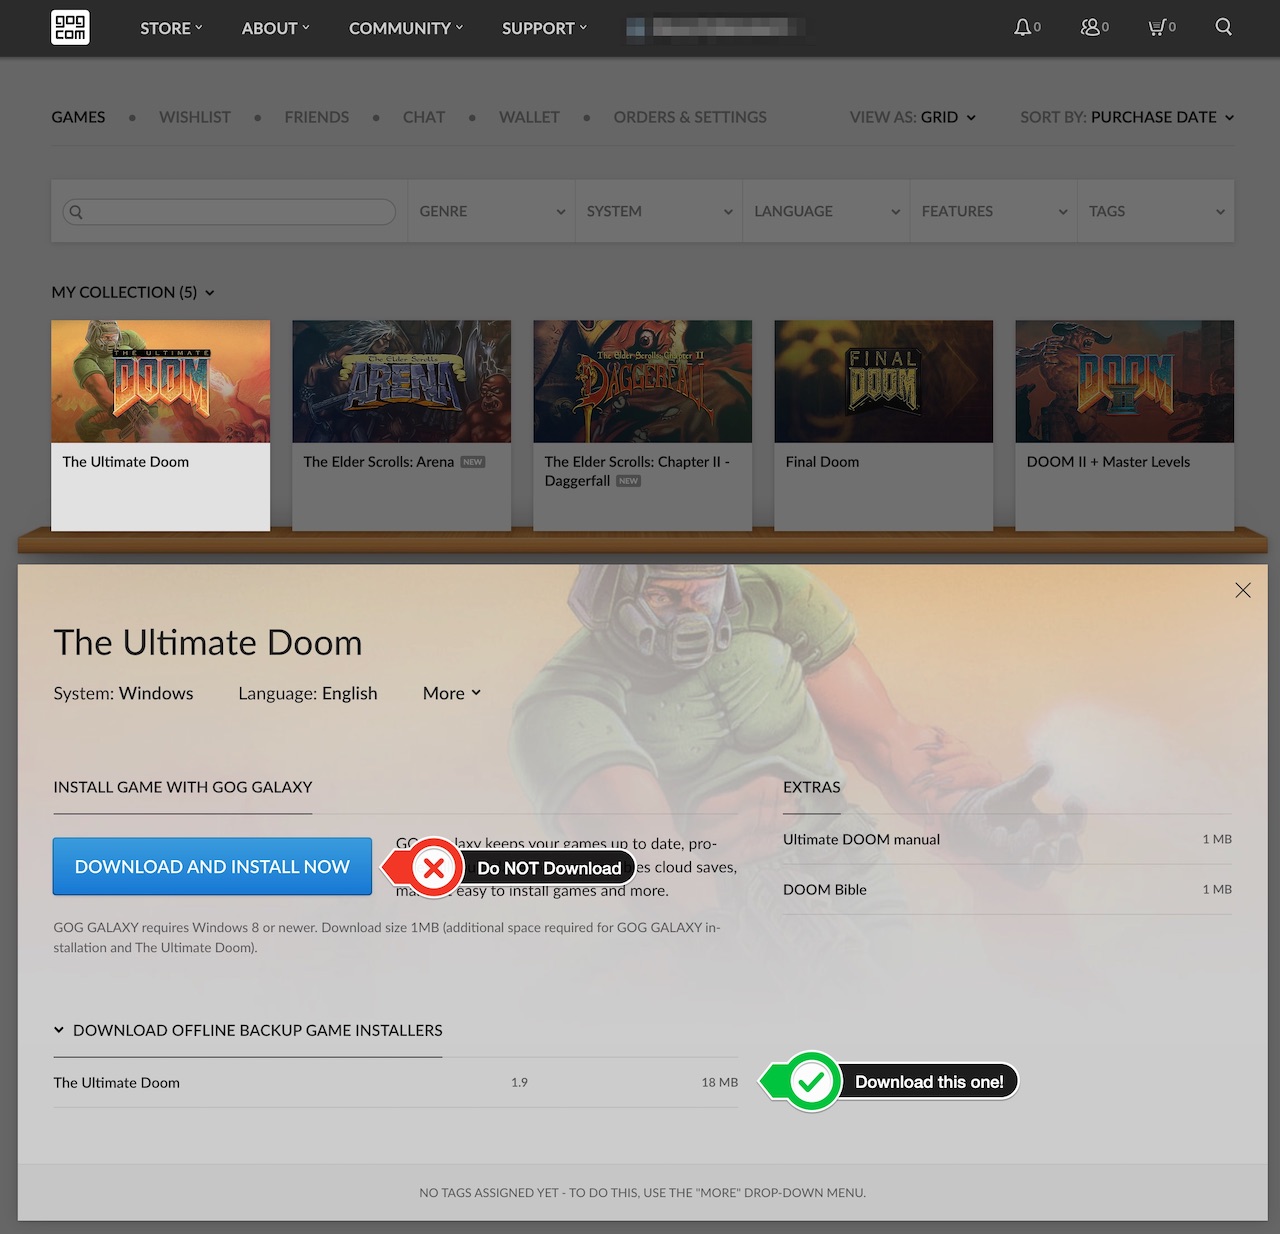 Download the Doom Offline Backup Game Installers from GOG.com